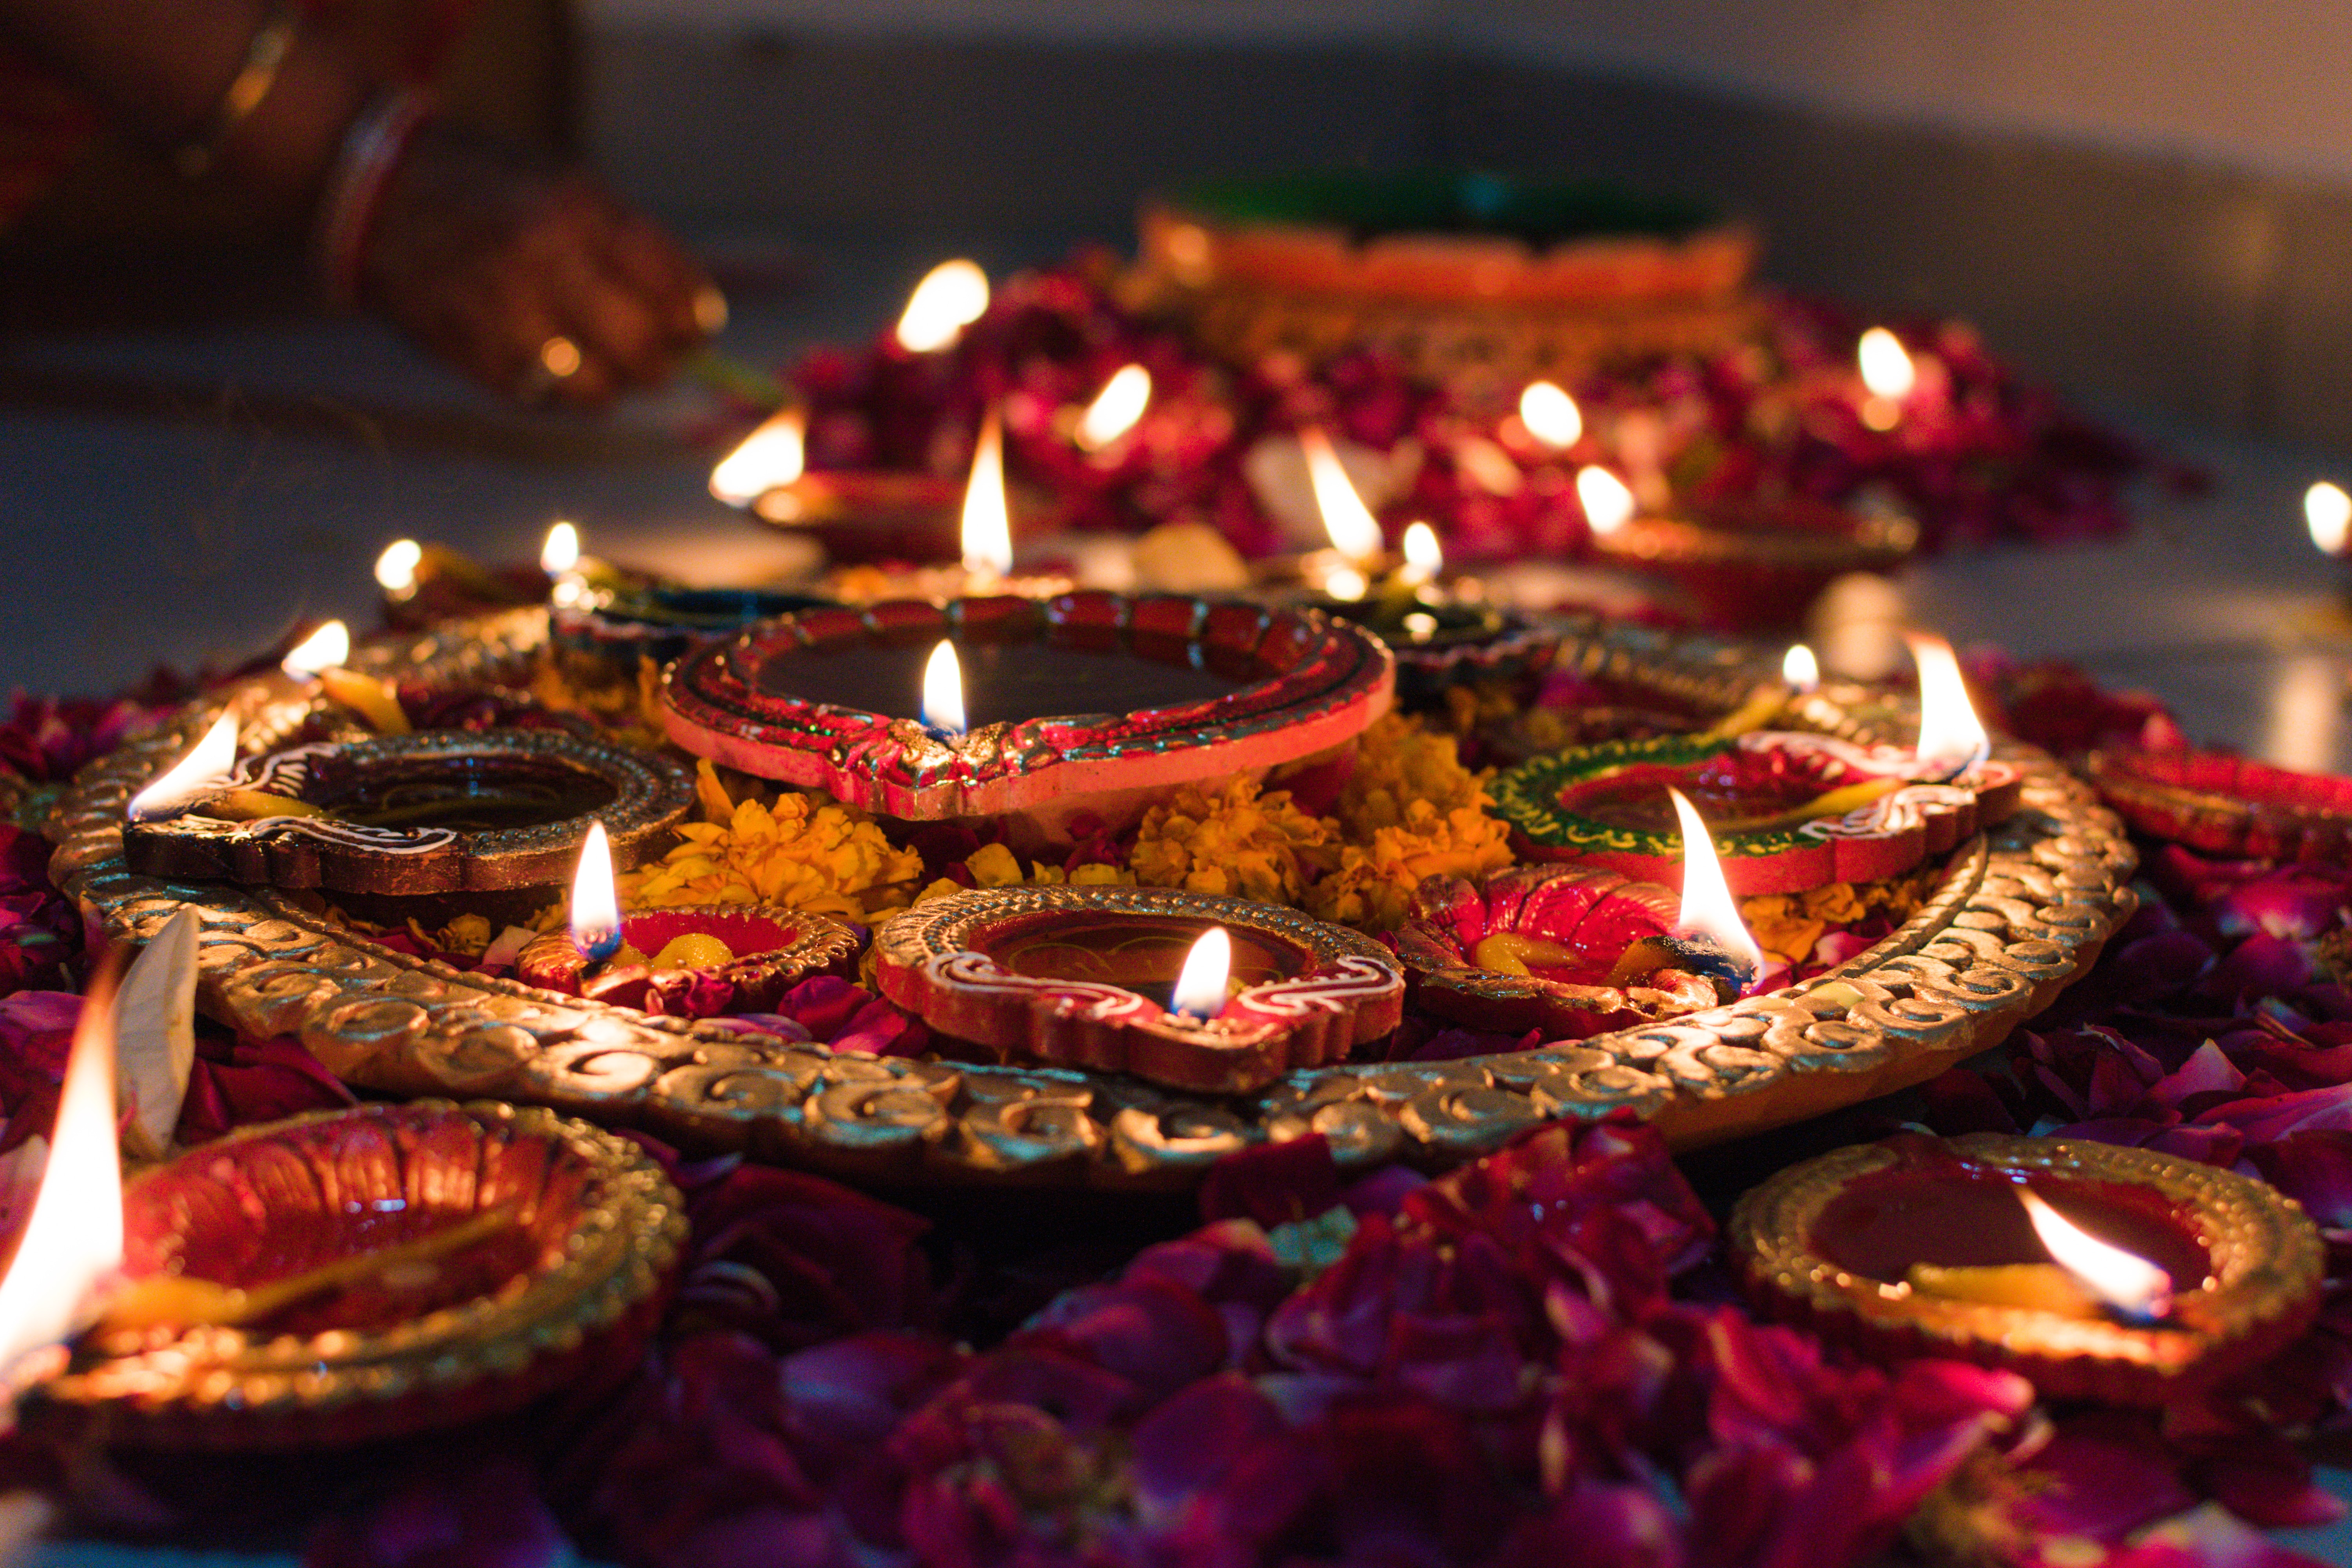 A photo of lit candles by Udayaditya Barua